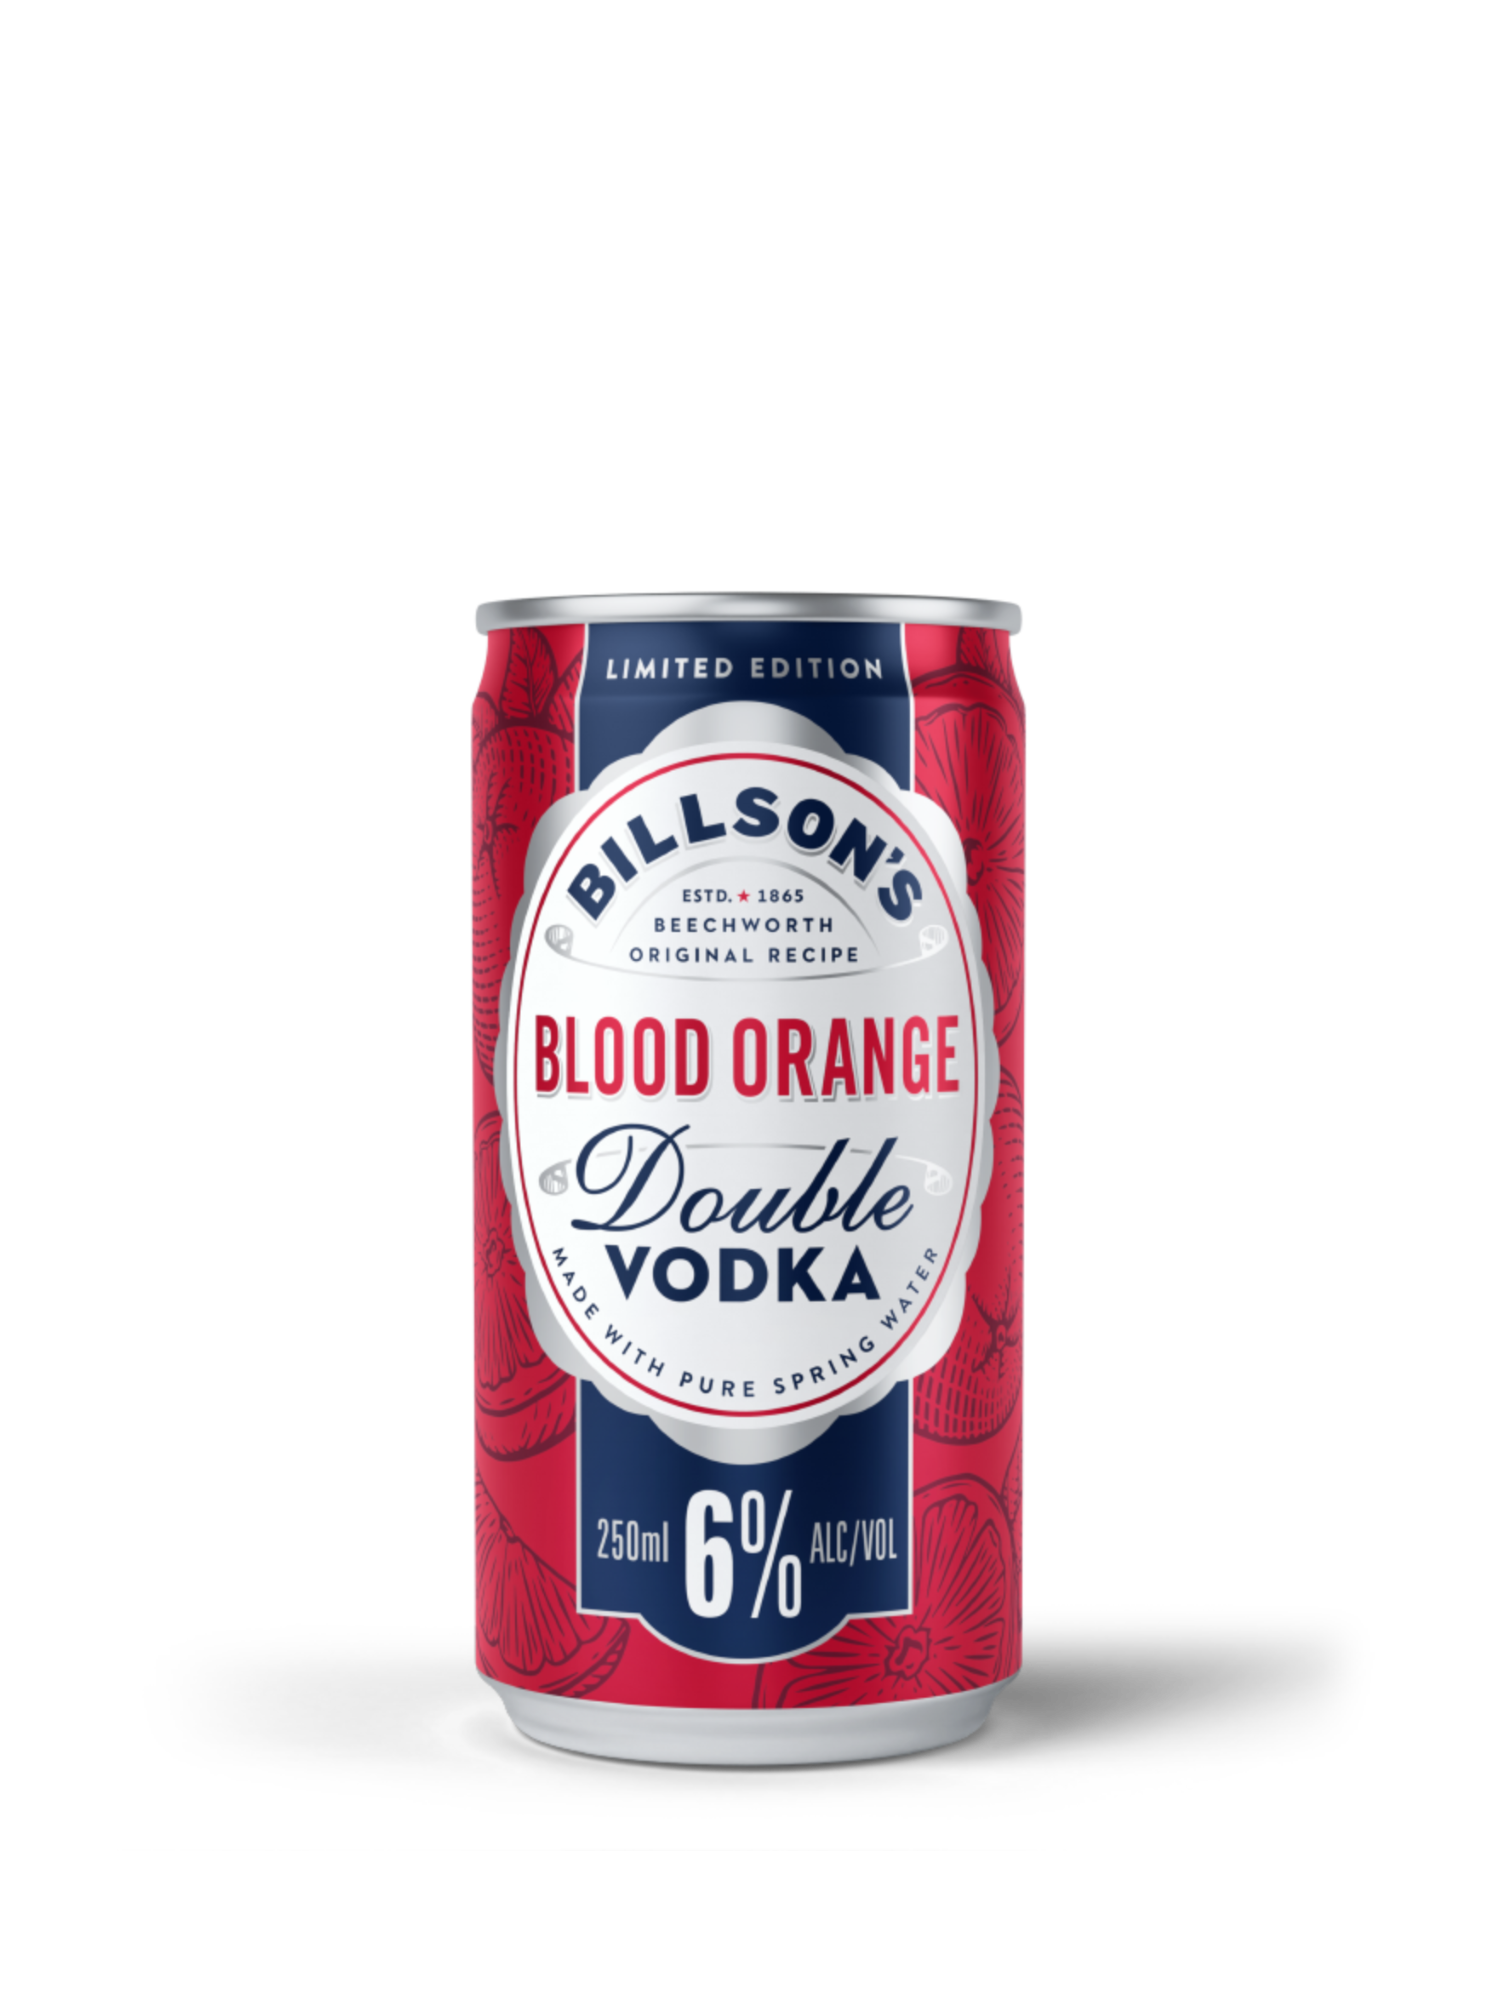 Billson's Double Vodka with Blood Orange